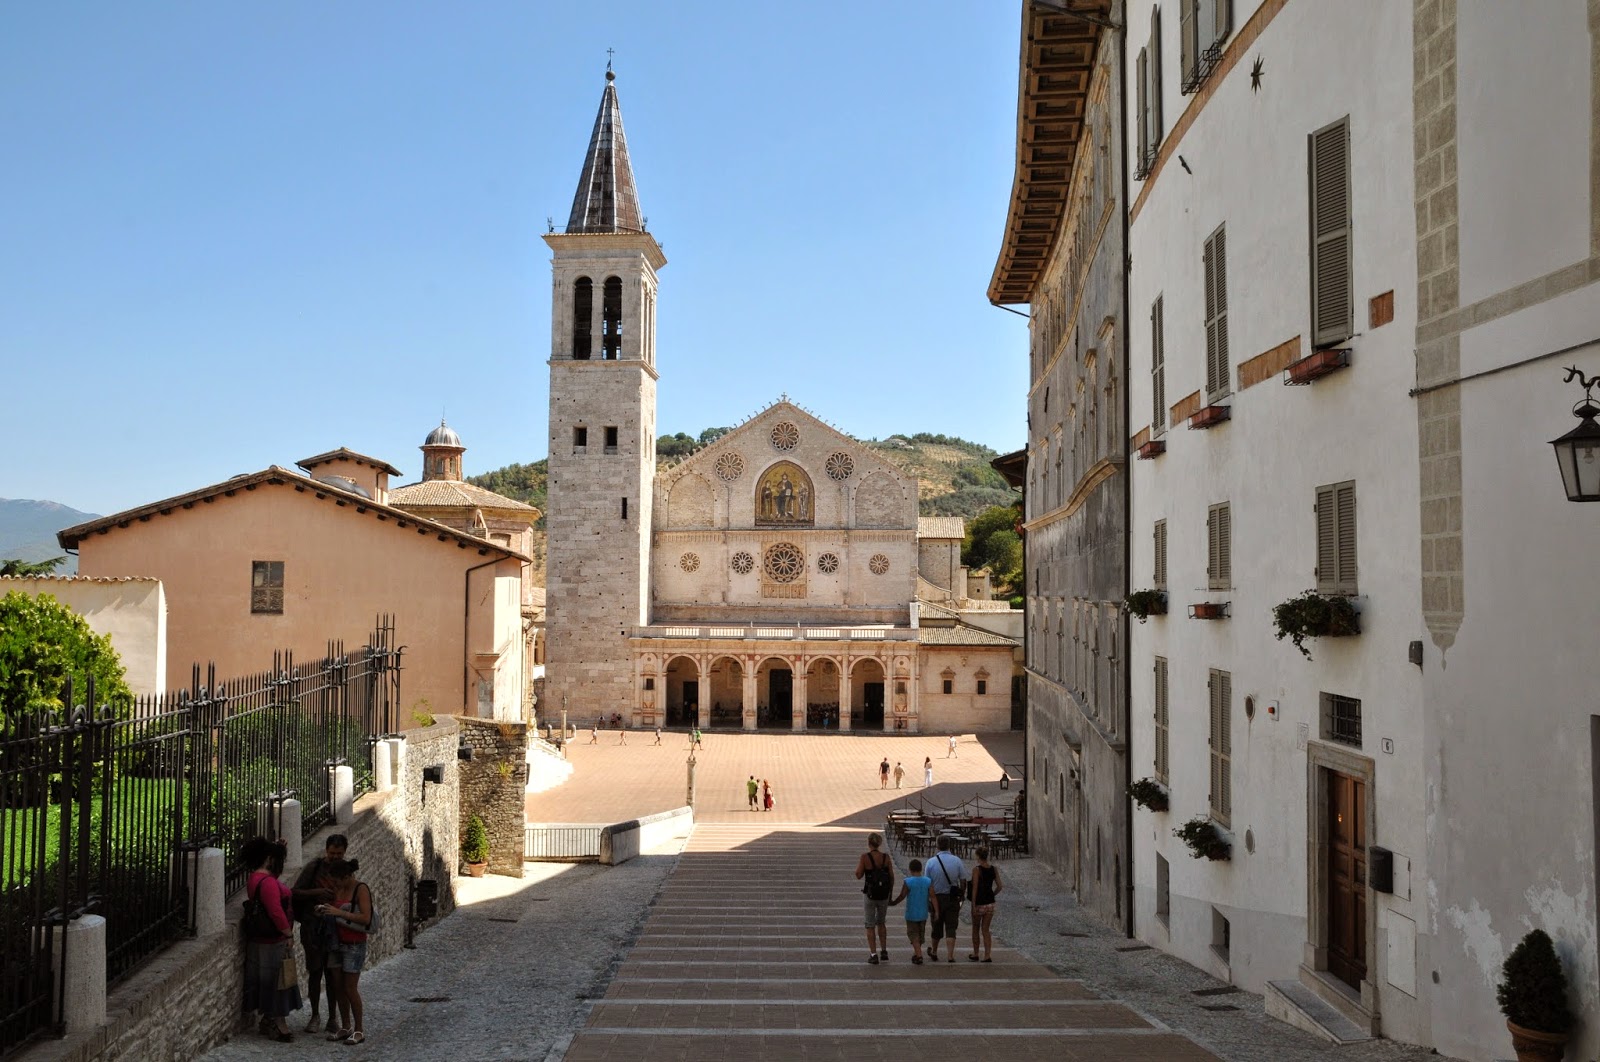 Sulle tracce di Don Matteo tra Gubbio e Spoleto